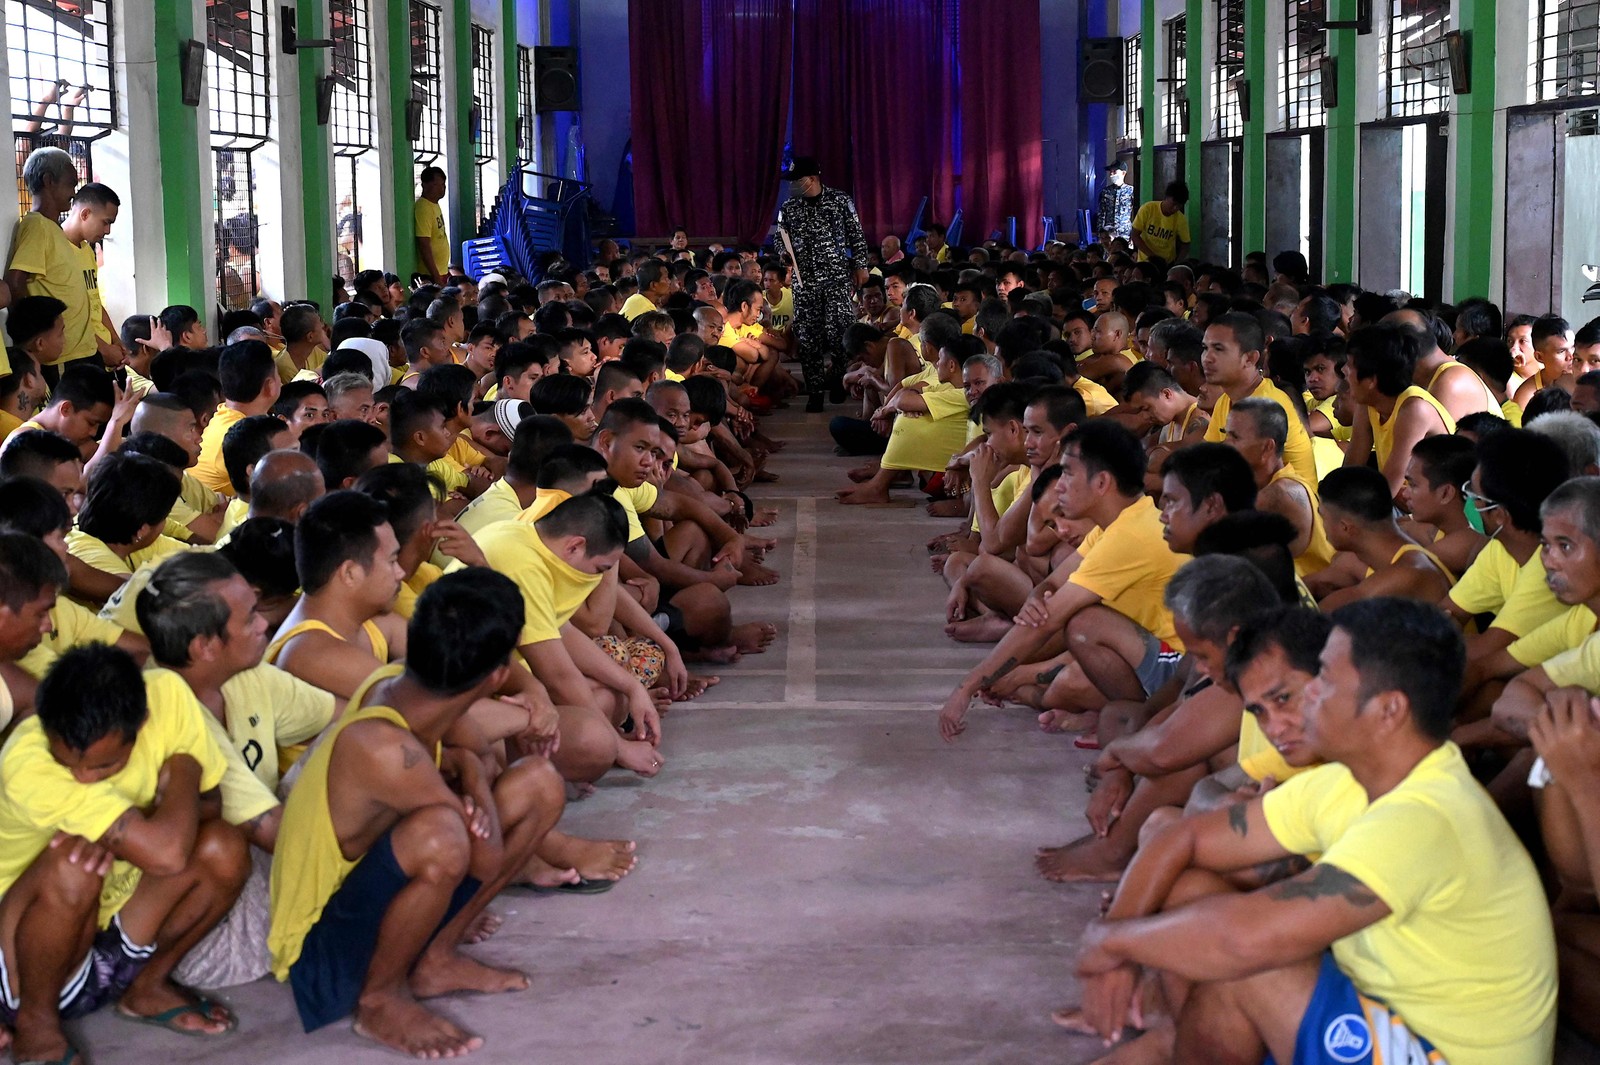 Presos aguardam em uma capela enquanto a polícia realiza busca nas celas por contrabando e drogas ilegais na prisão, em Manila — Foto: JAM STA ROSA / AFP